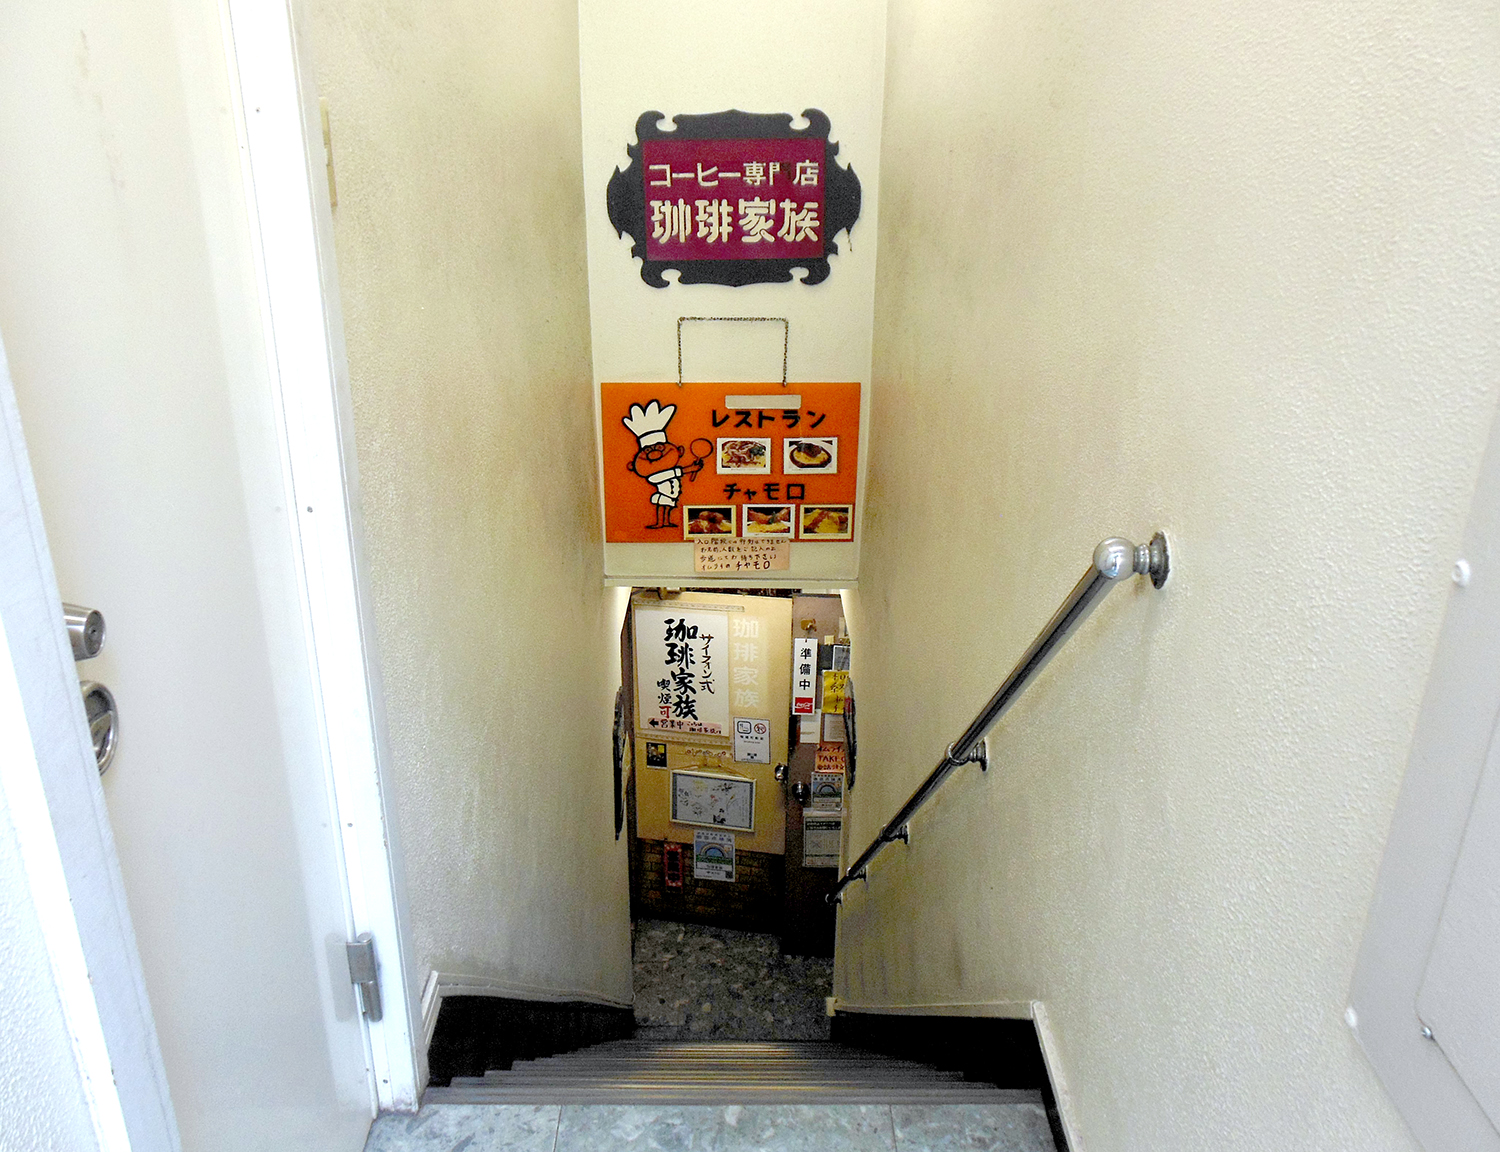 階段を下りると、そこは昭和の時代にトリップしたかのような場所。